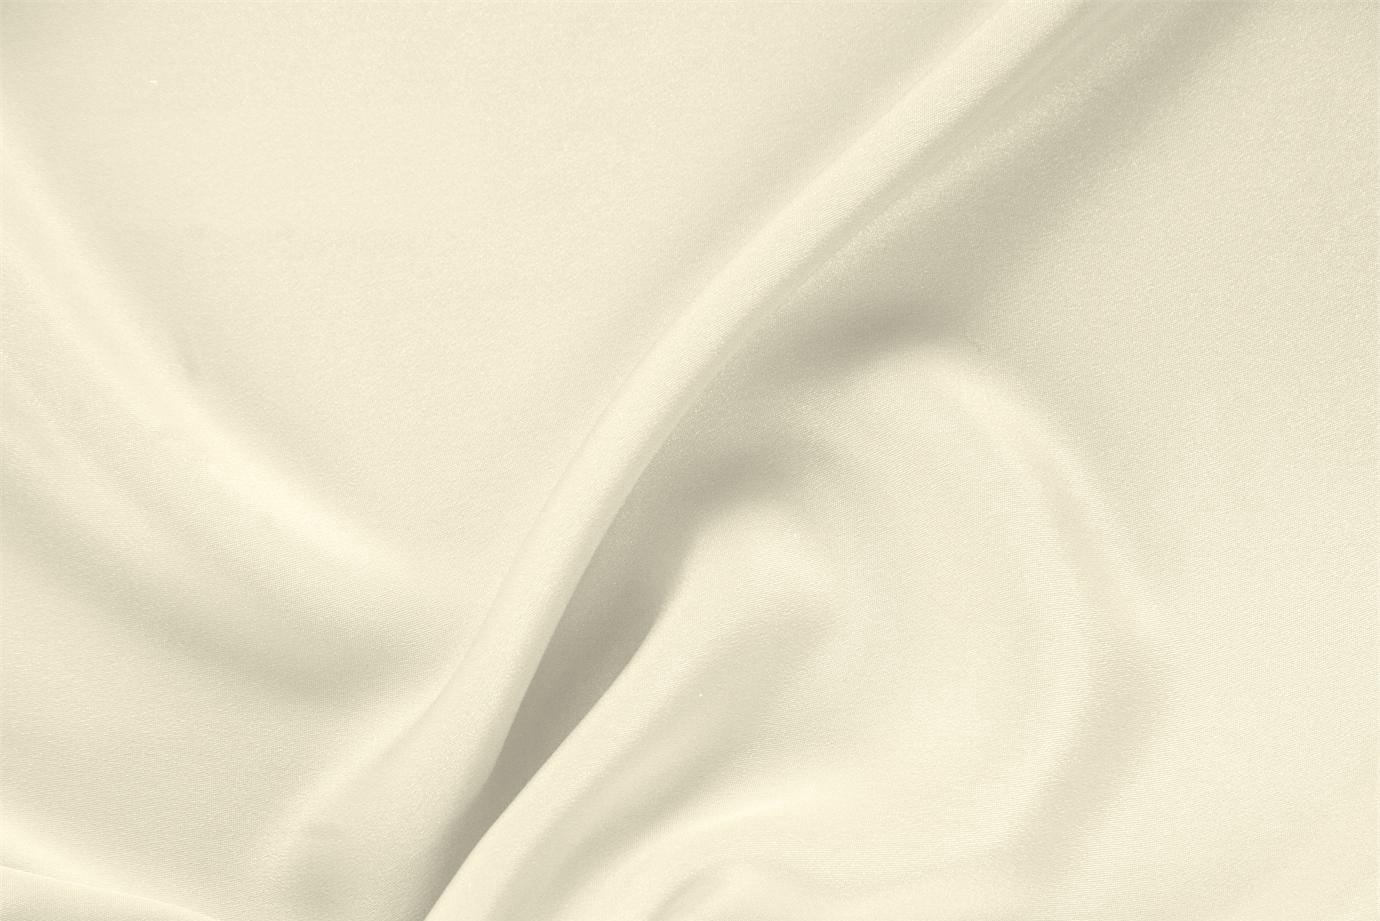 Tissu Drap Blanc lait en Soie pour vêtements